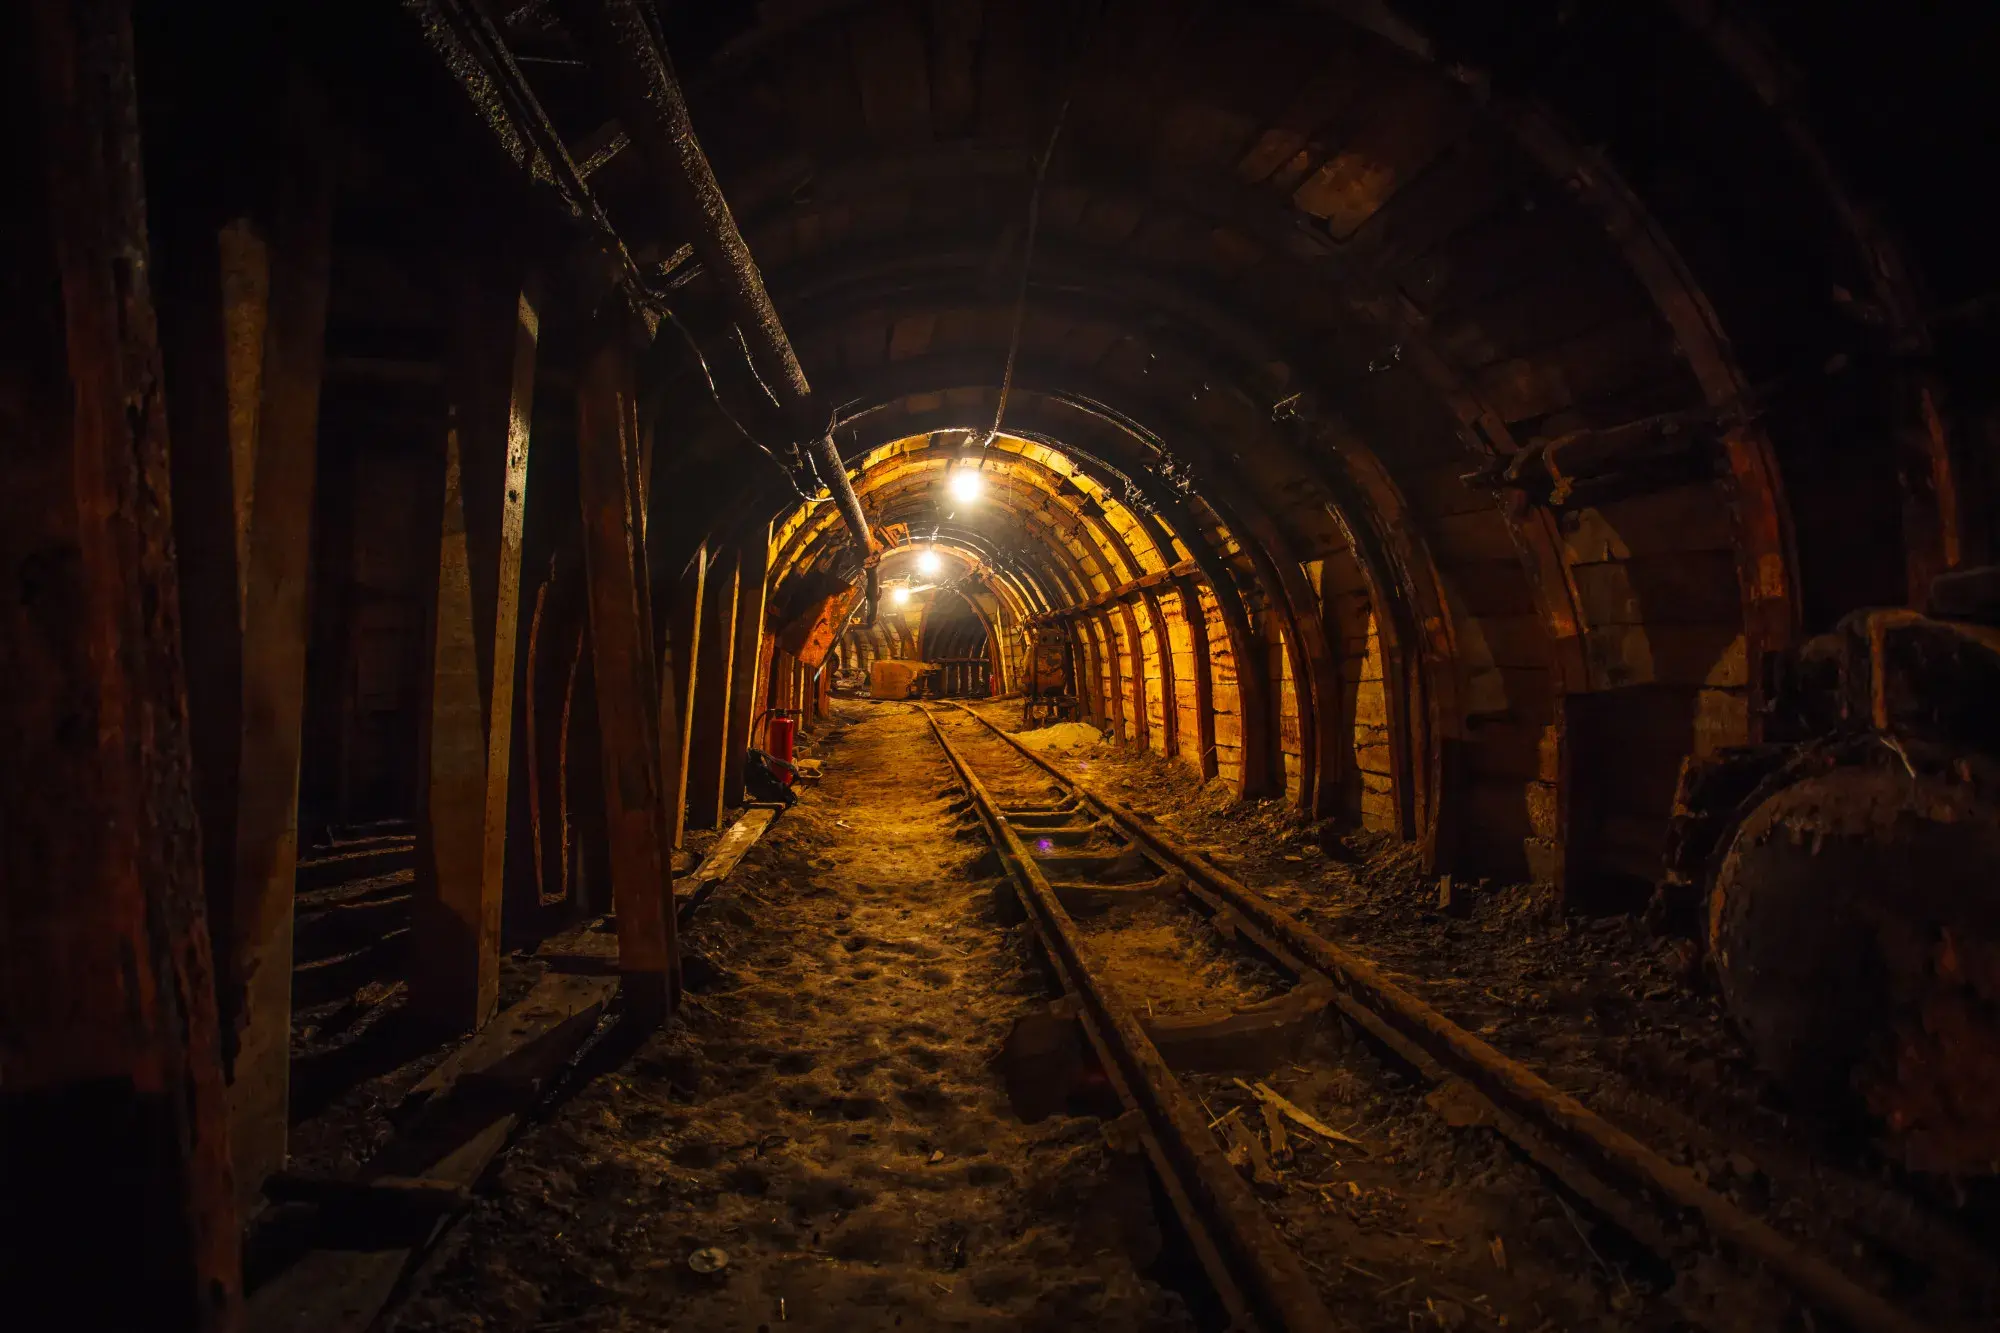 tunel-minero-subterraneo-rieles